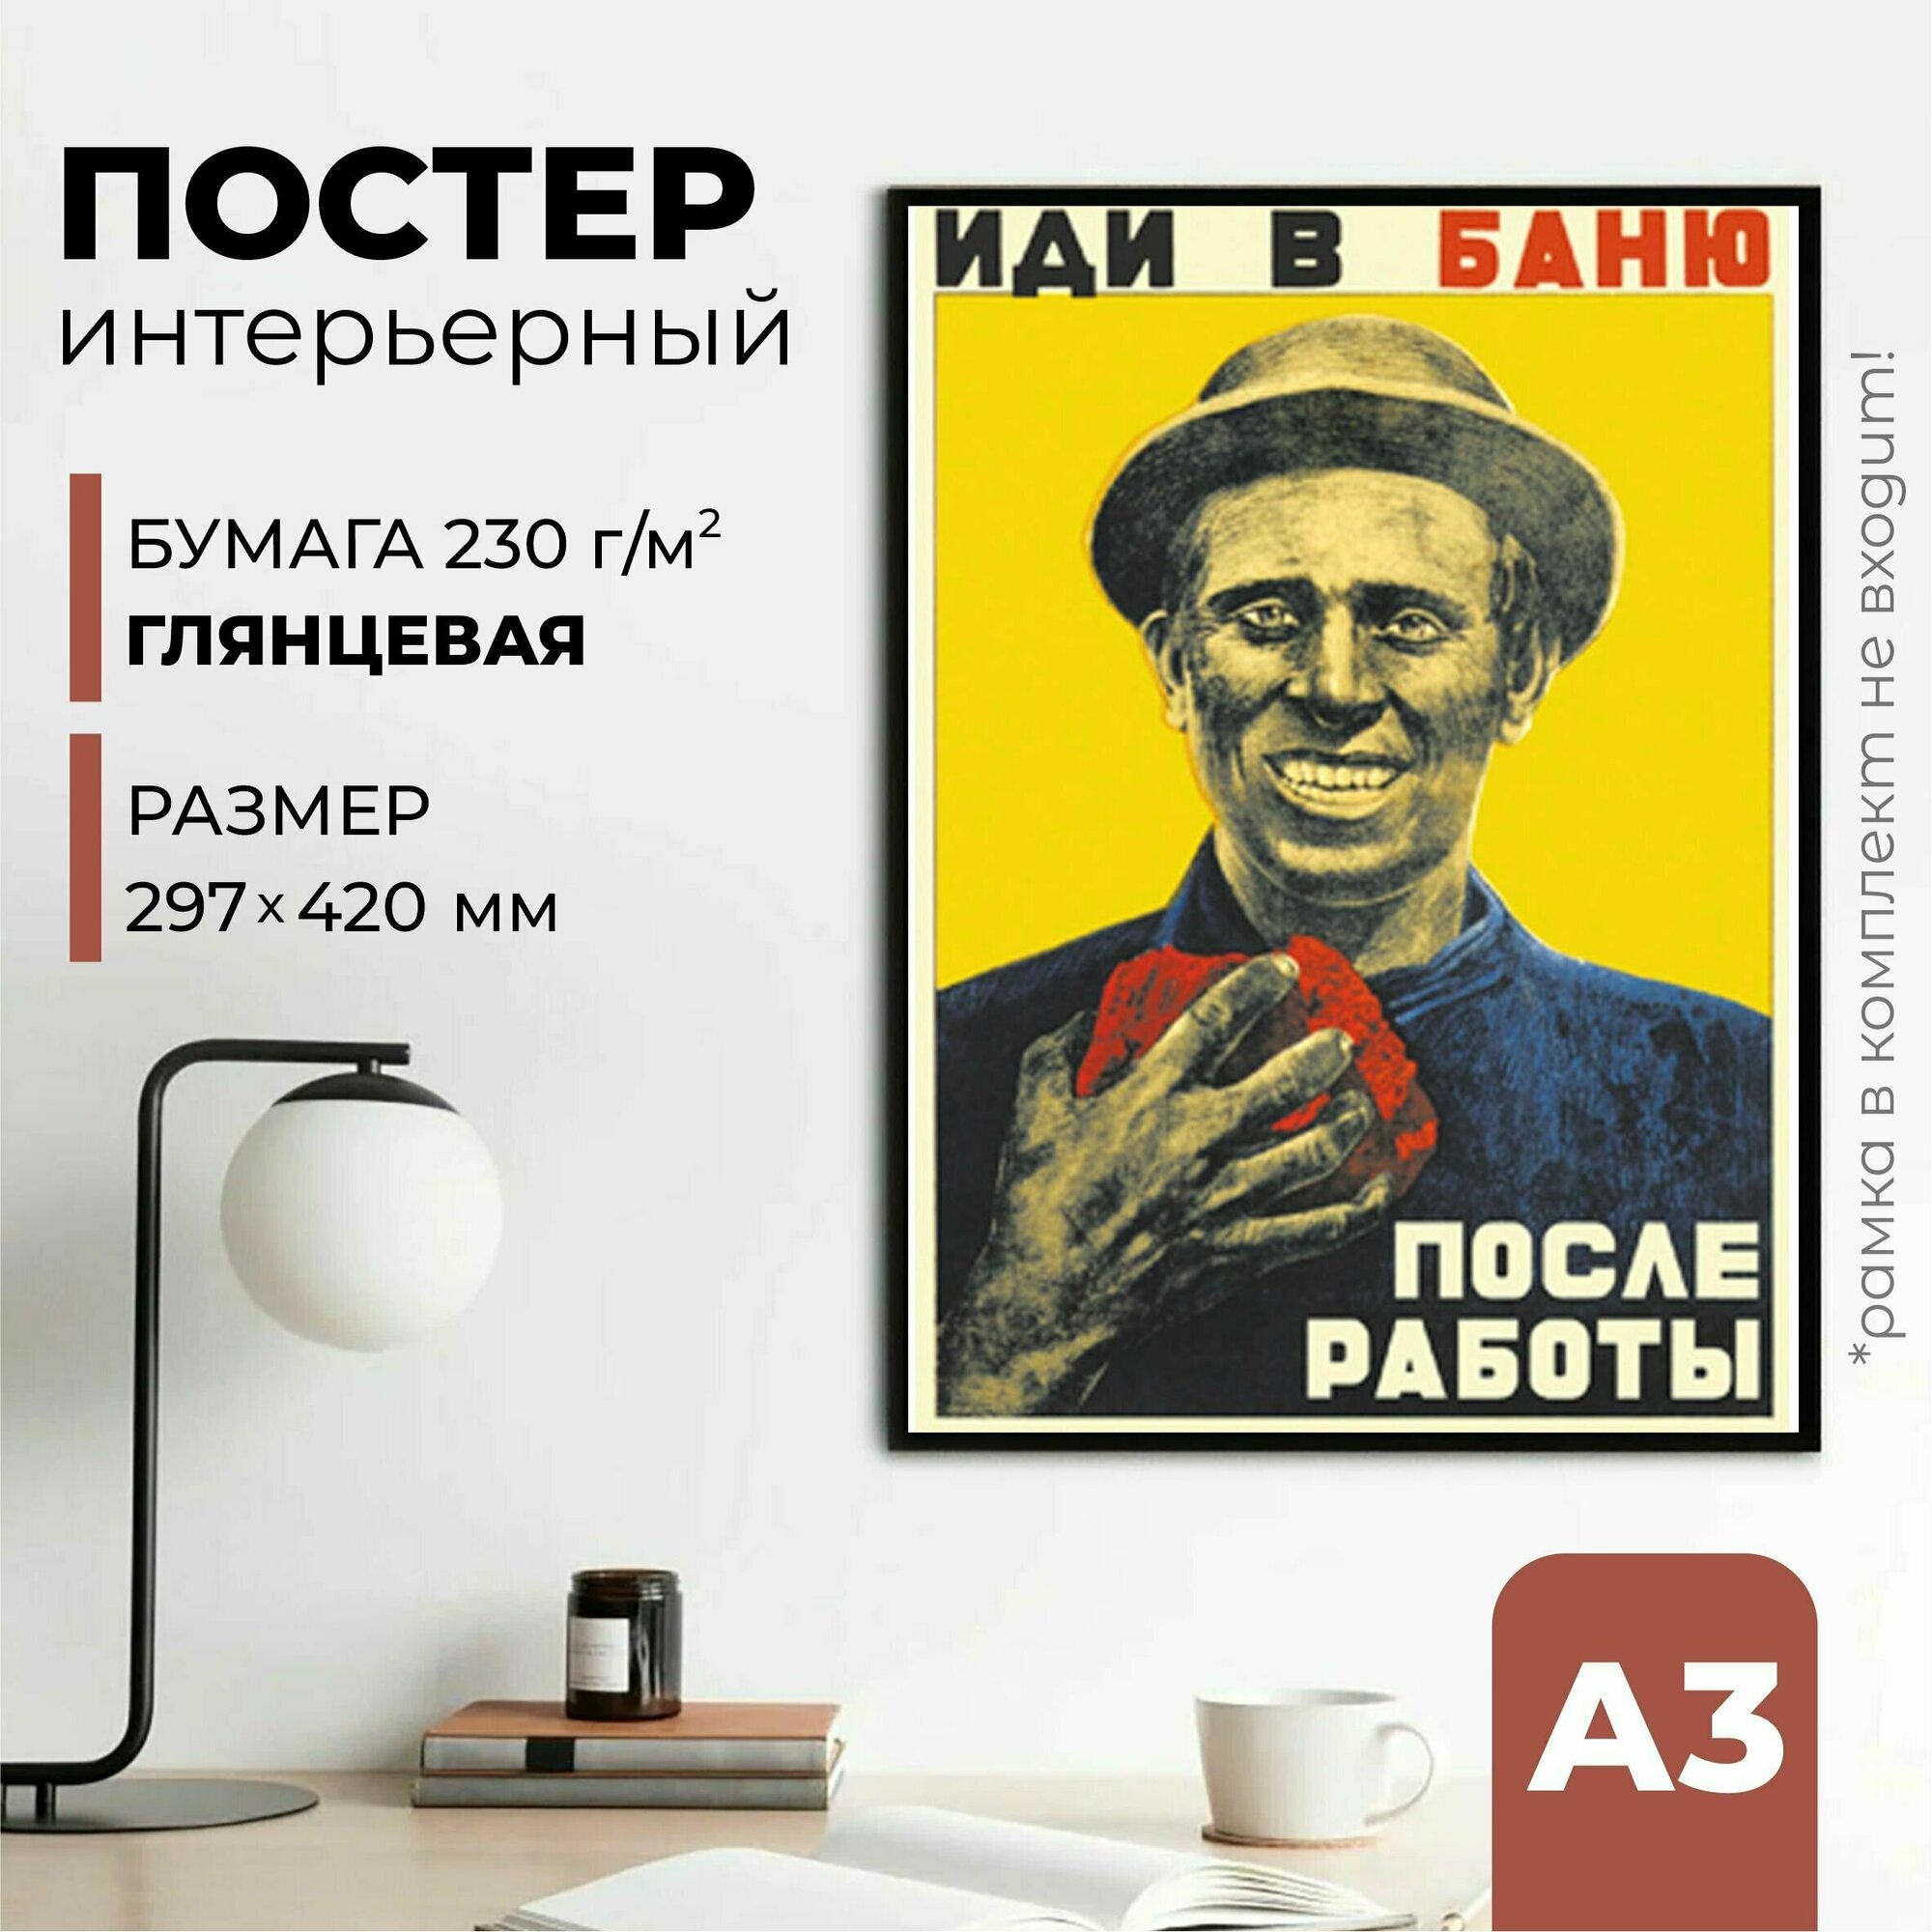 Плакат СССР "Иди в баню после работы", 42 см х 30 см